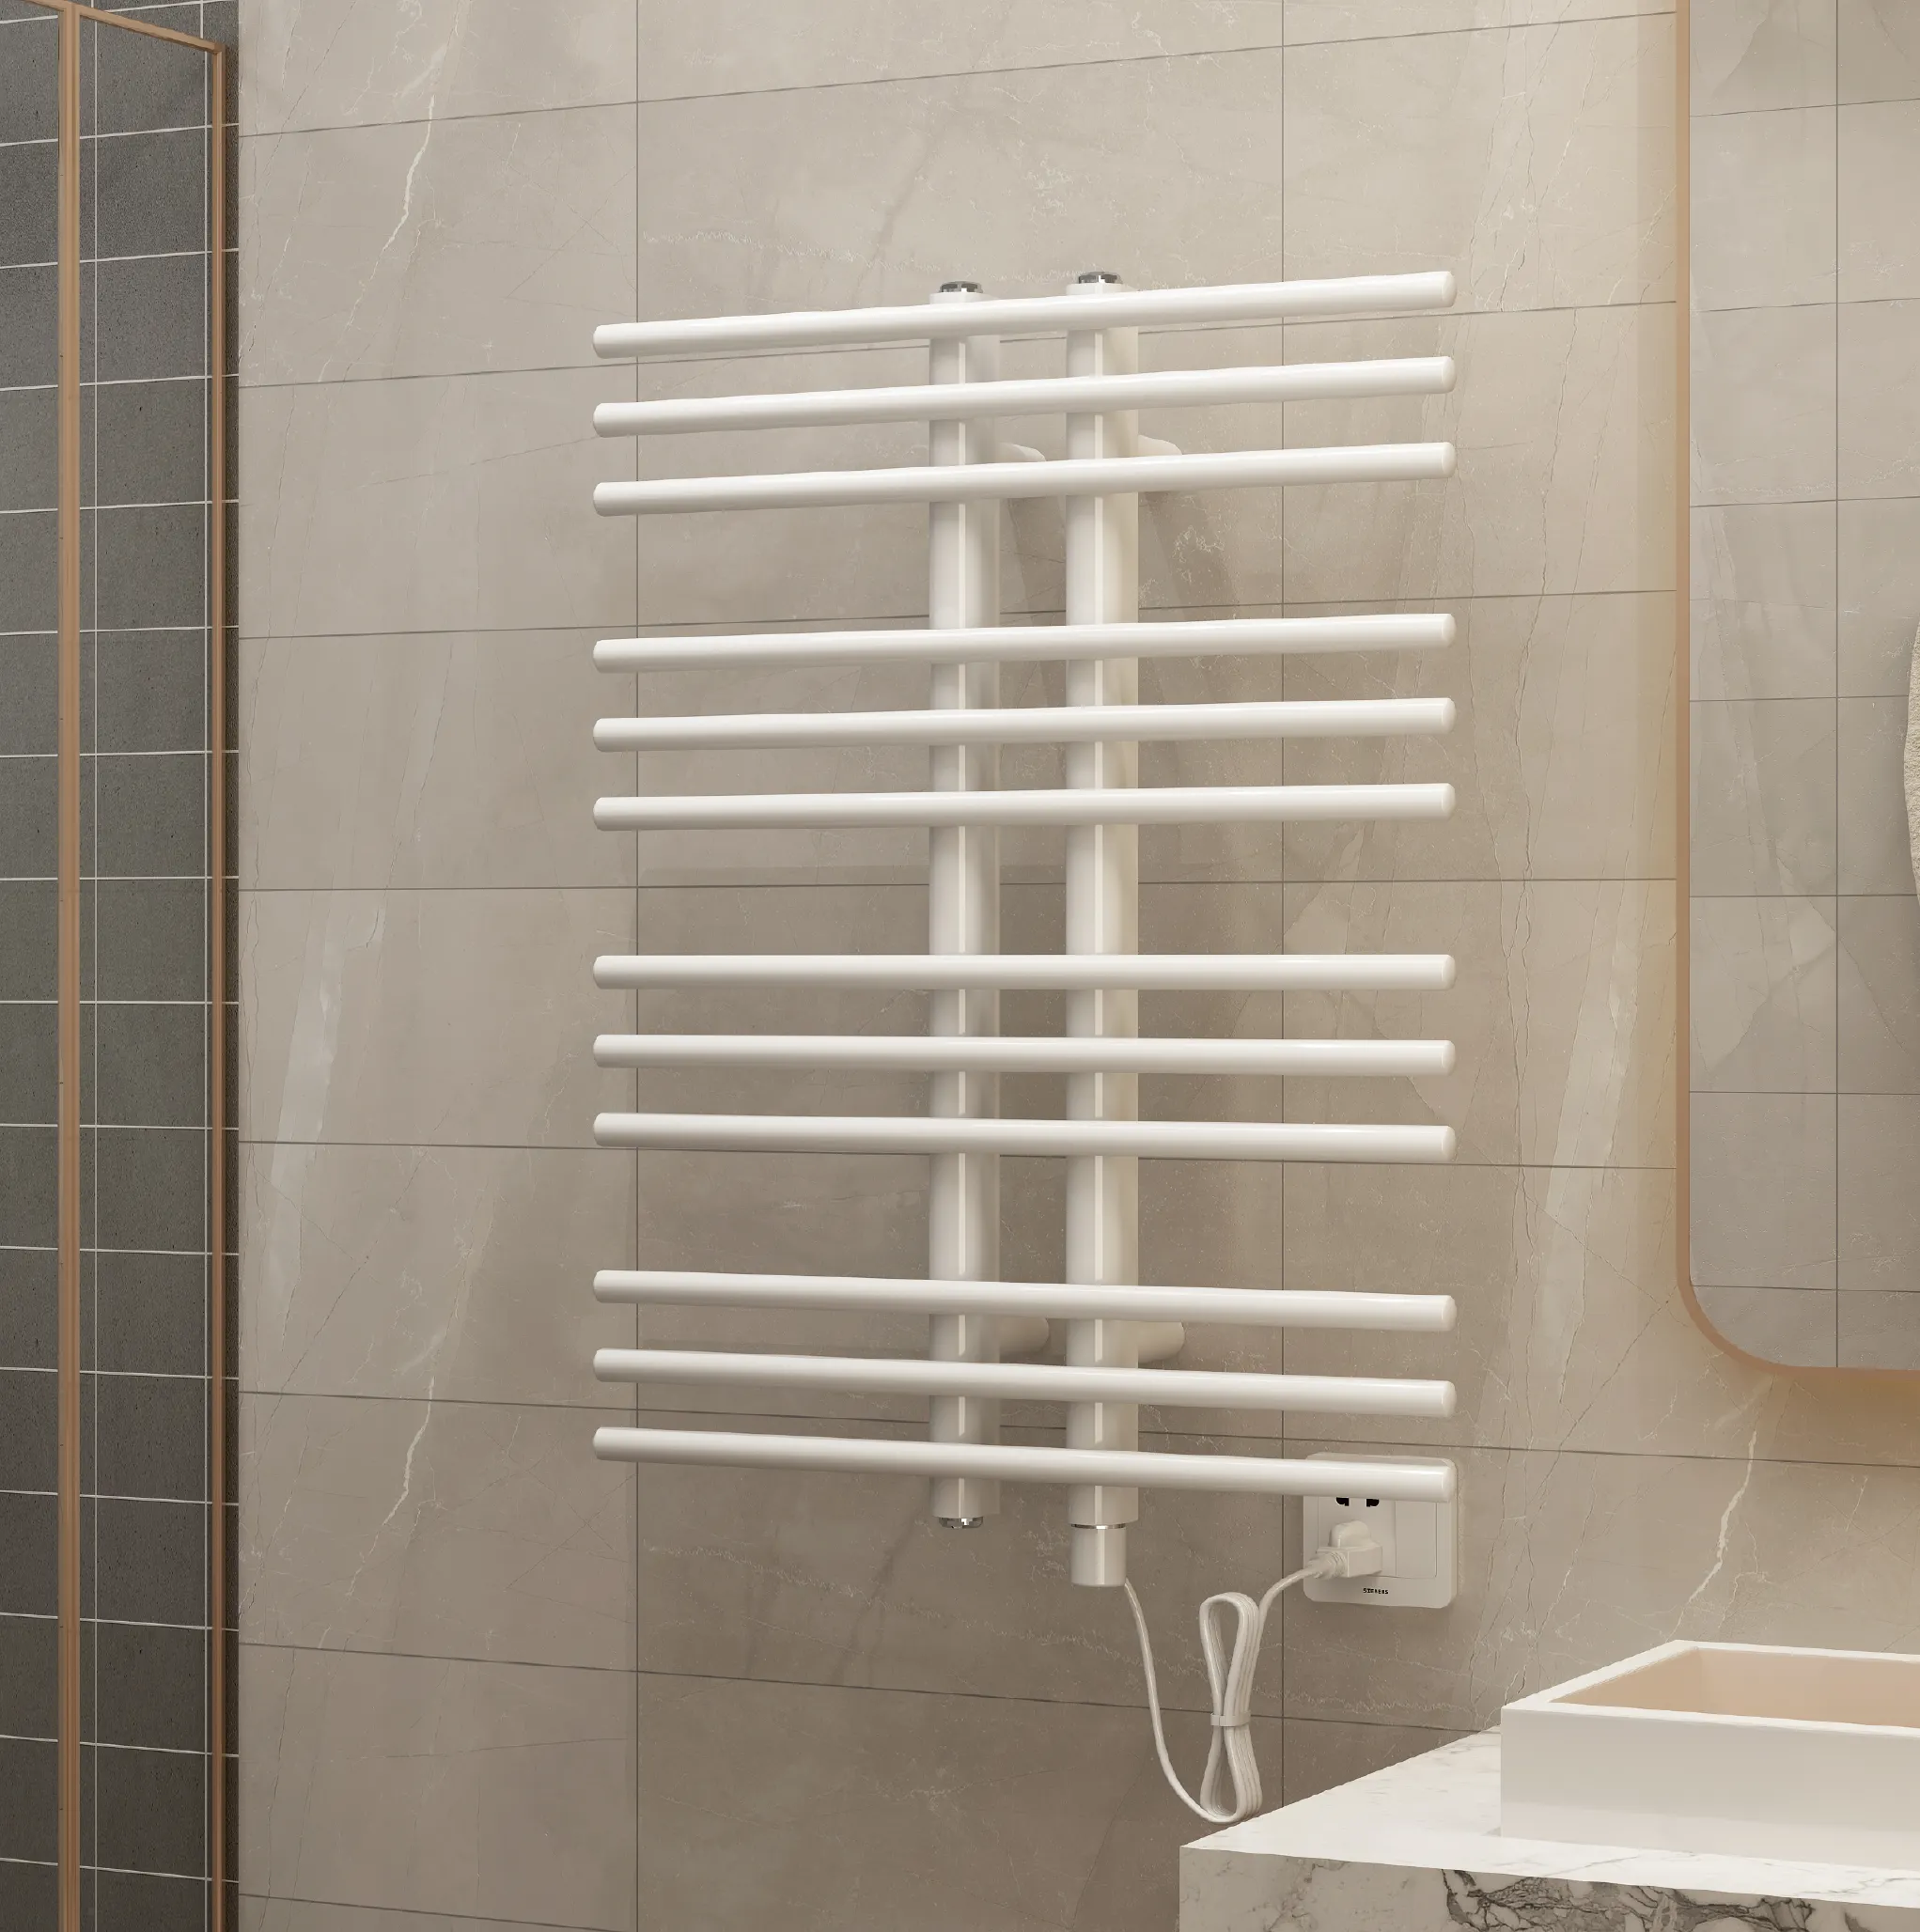 AVONFLOW designer electric towel radiator heated Bathroom towel warmer rack